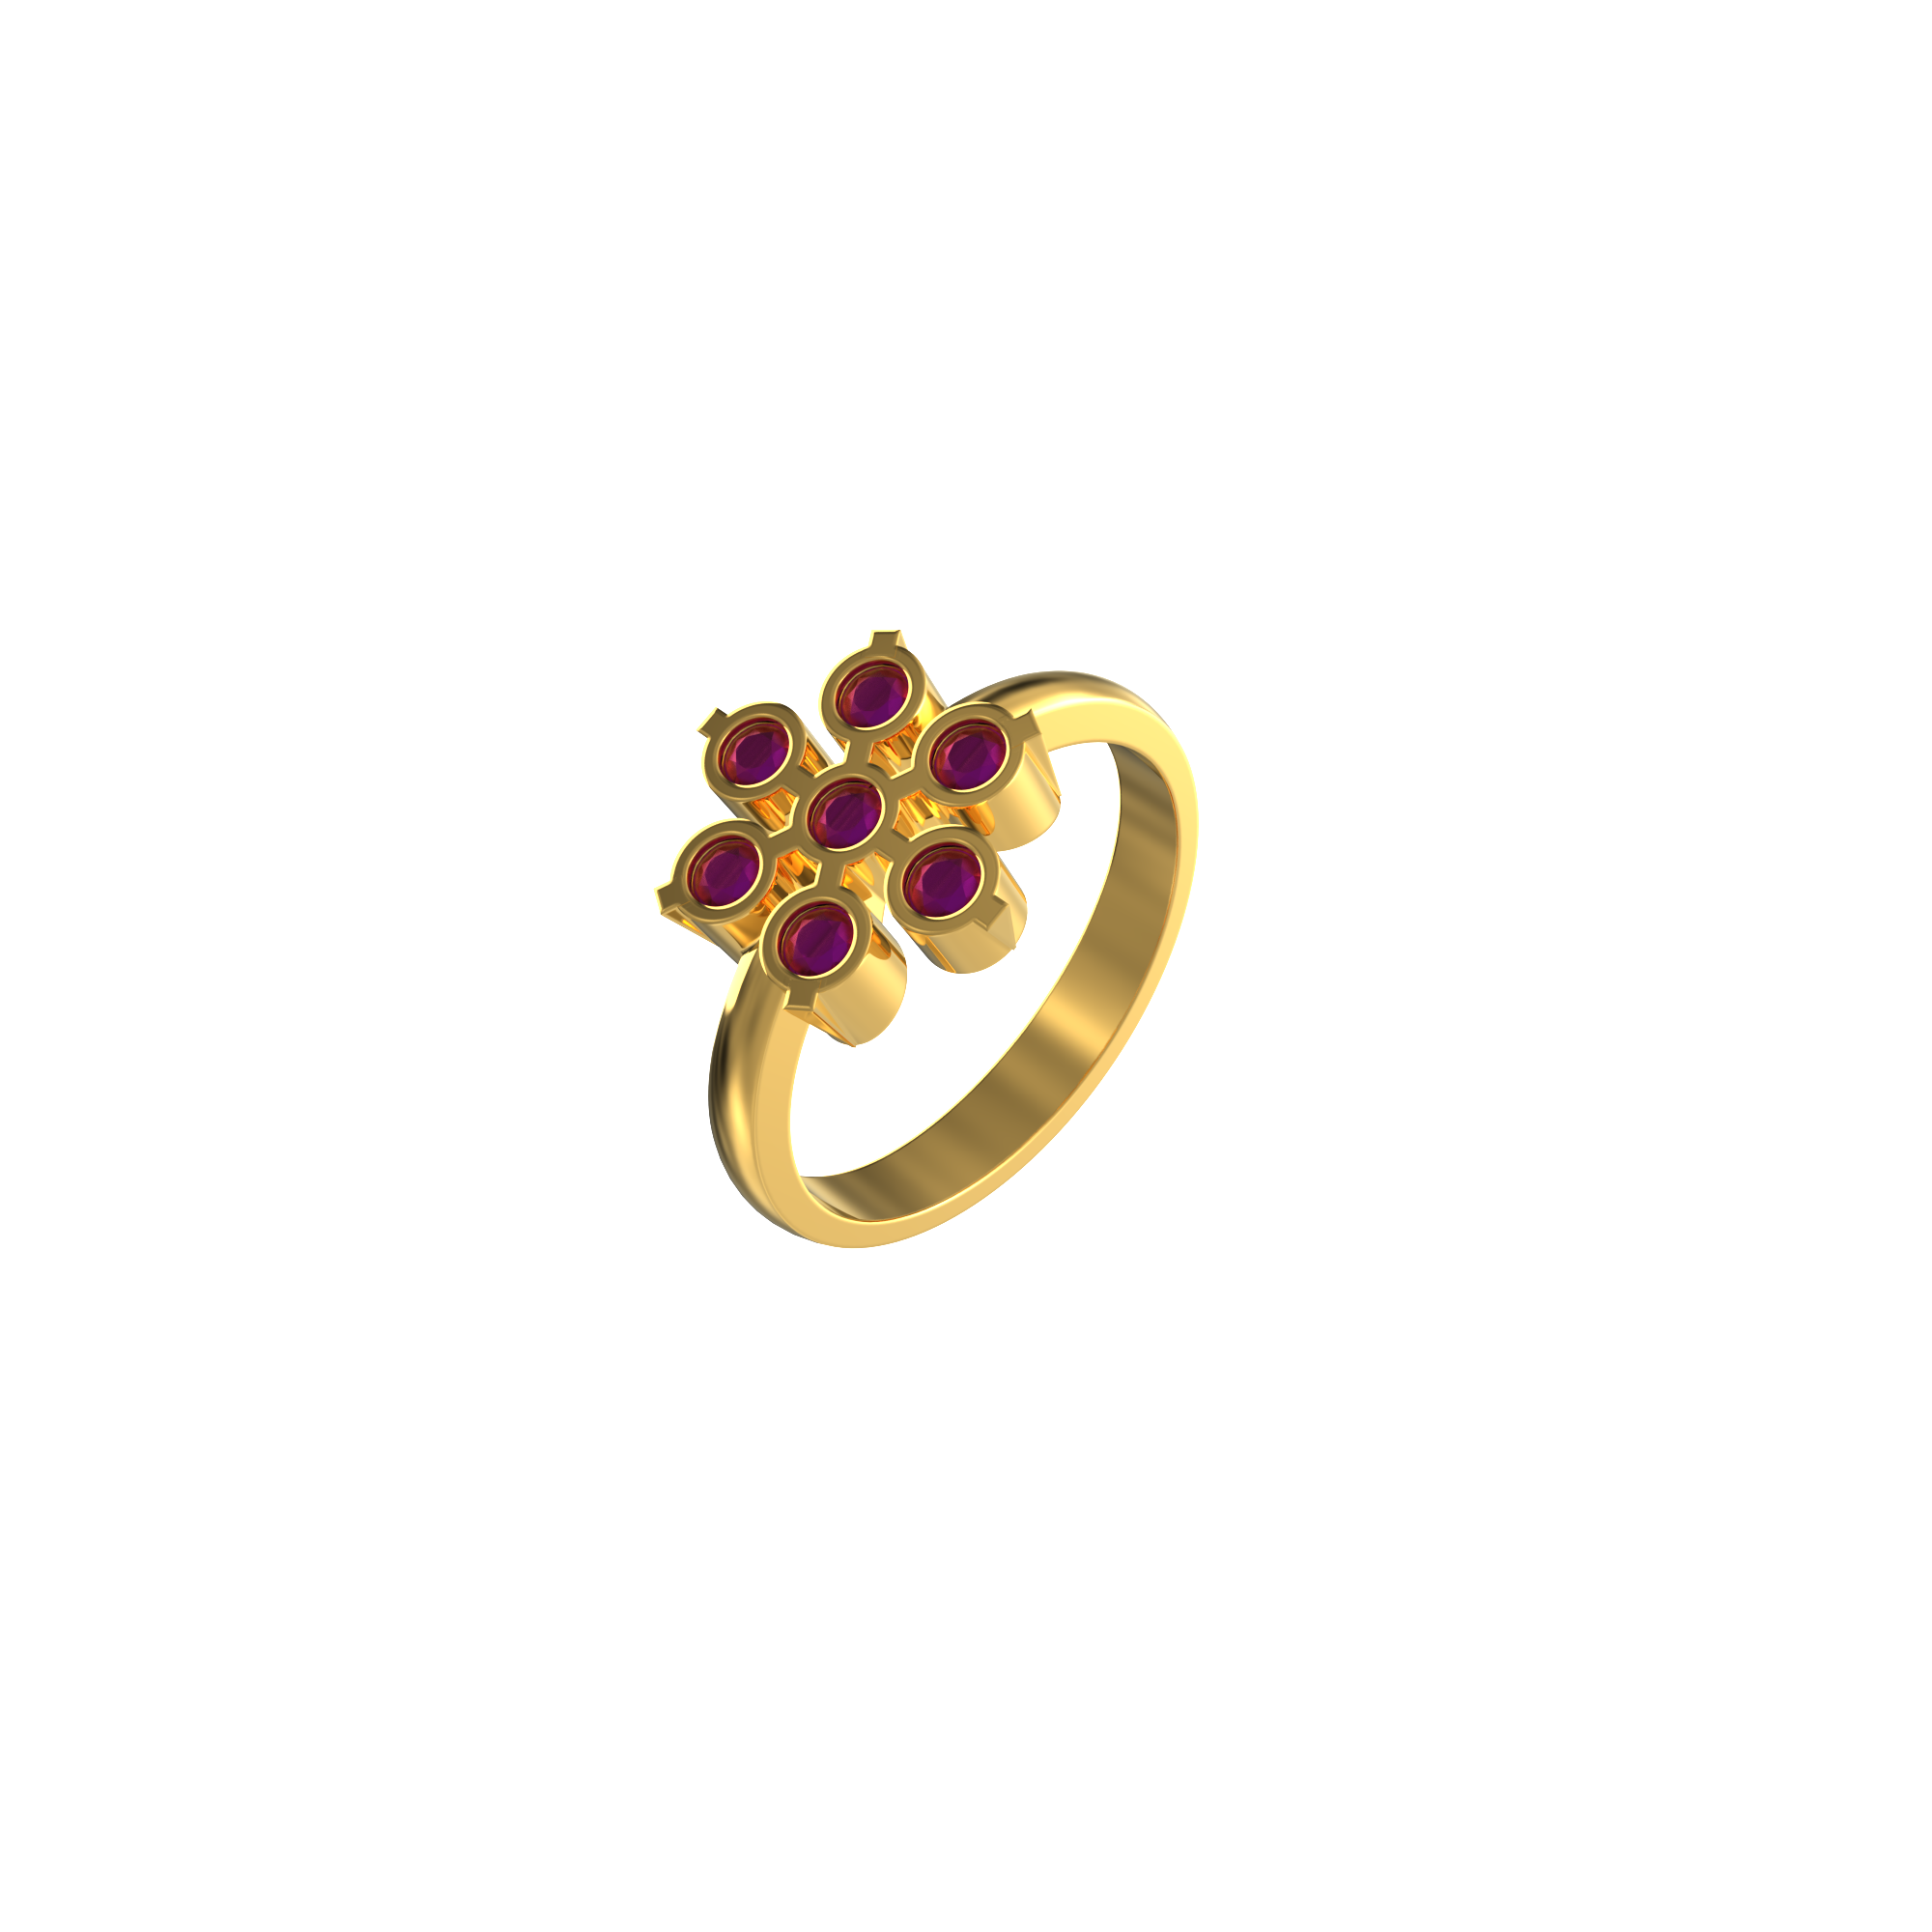 Designer-gold-ring-for-female